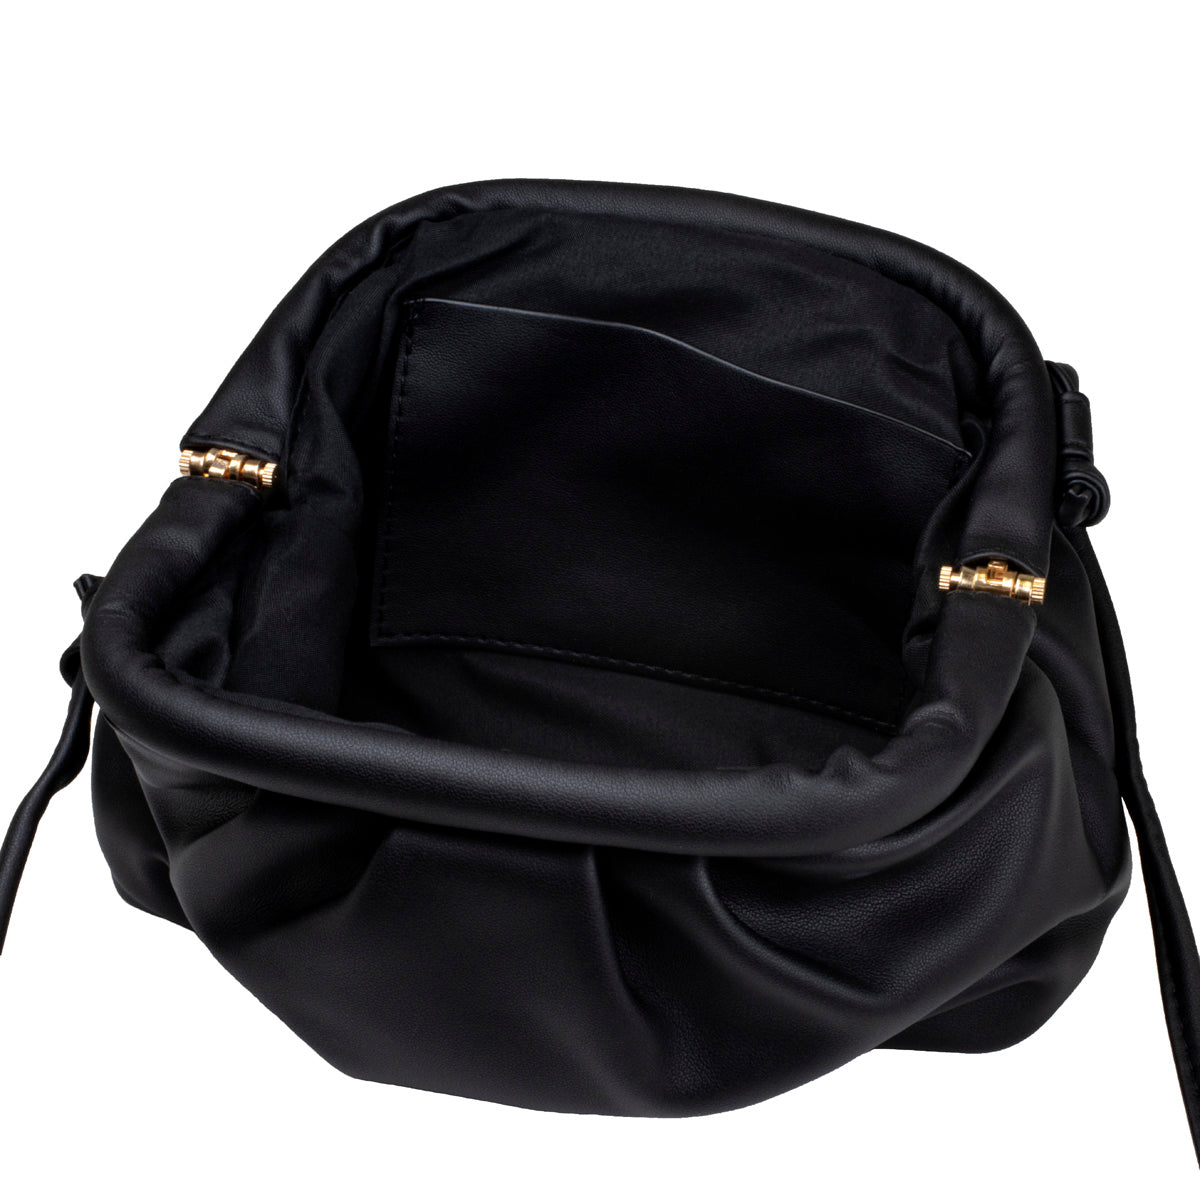 Naisten musta pieni pussujja laukku 2910001525885 | Ninja.fi